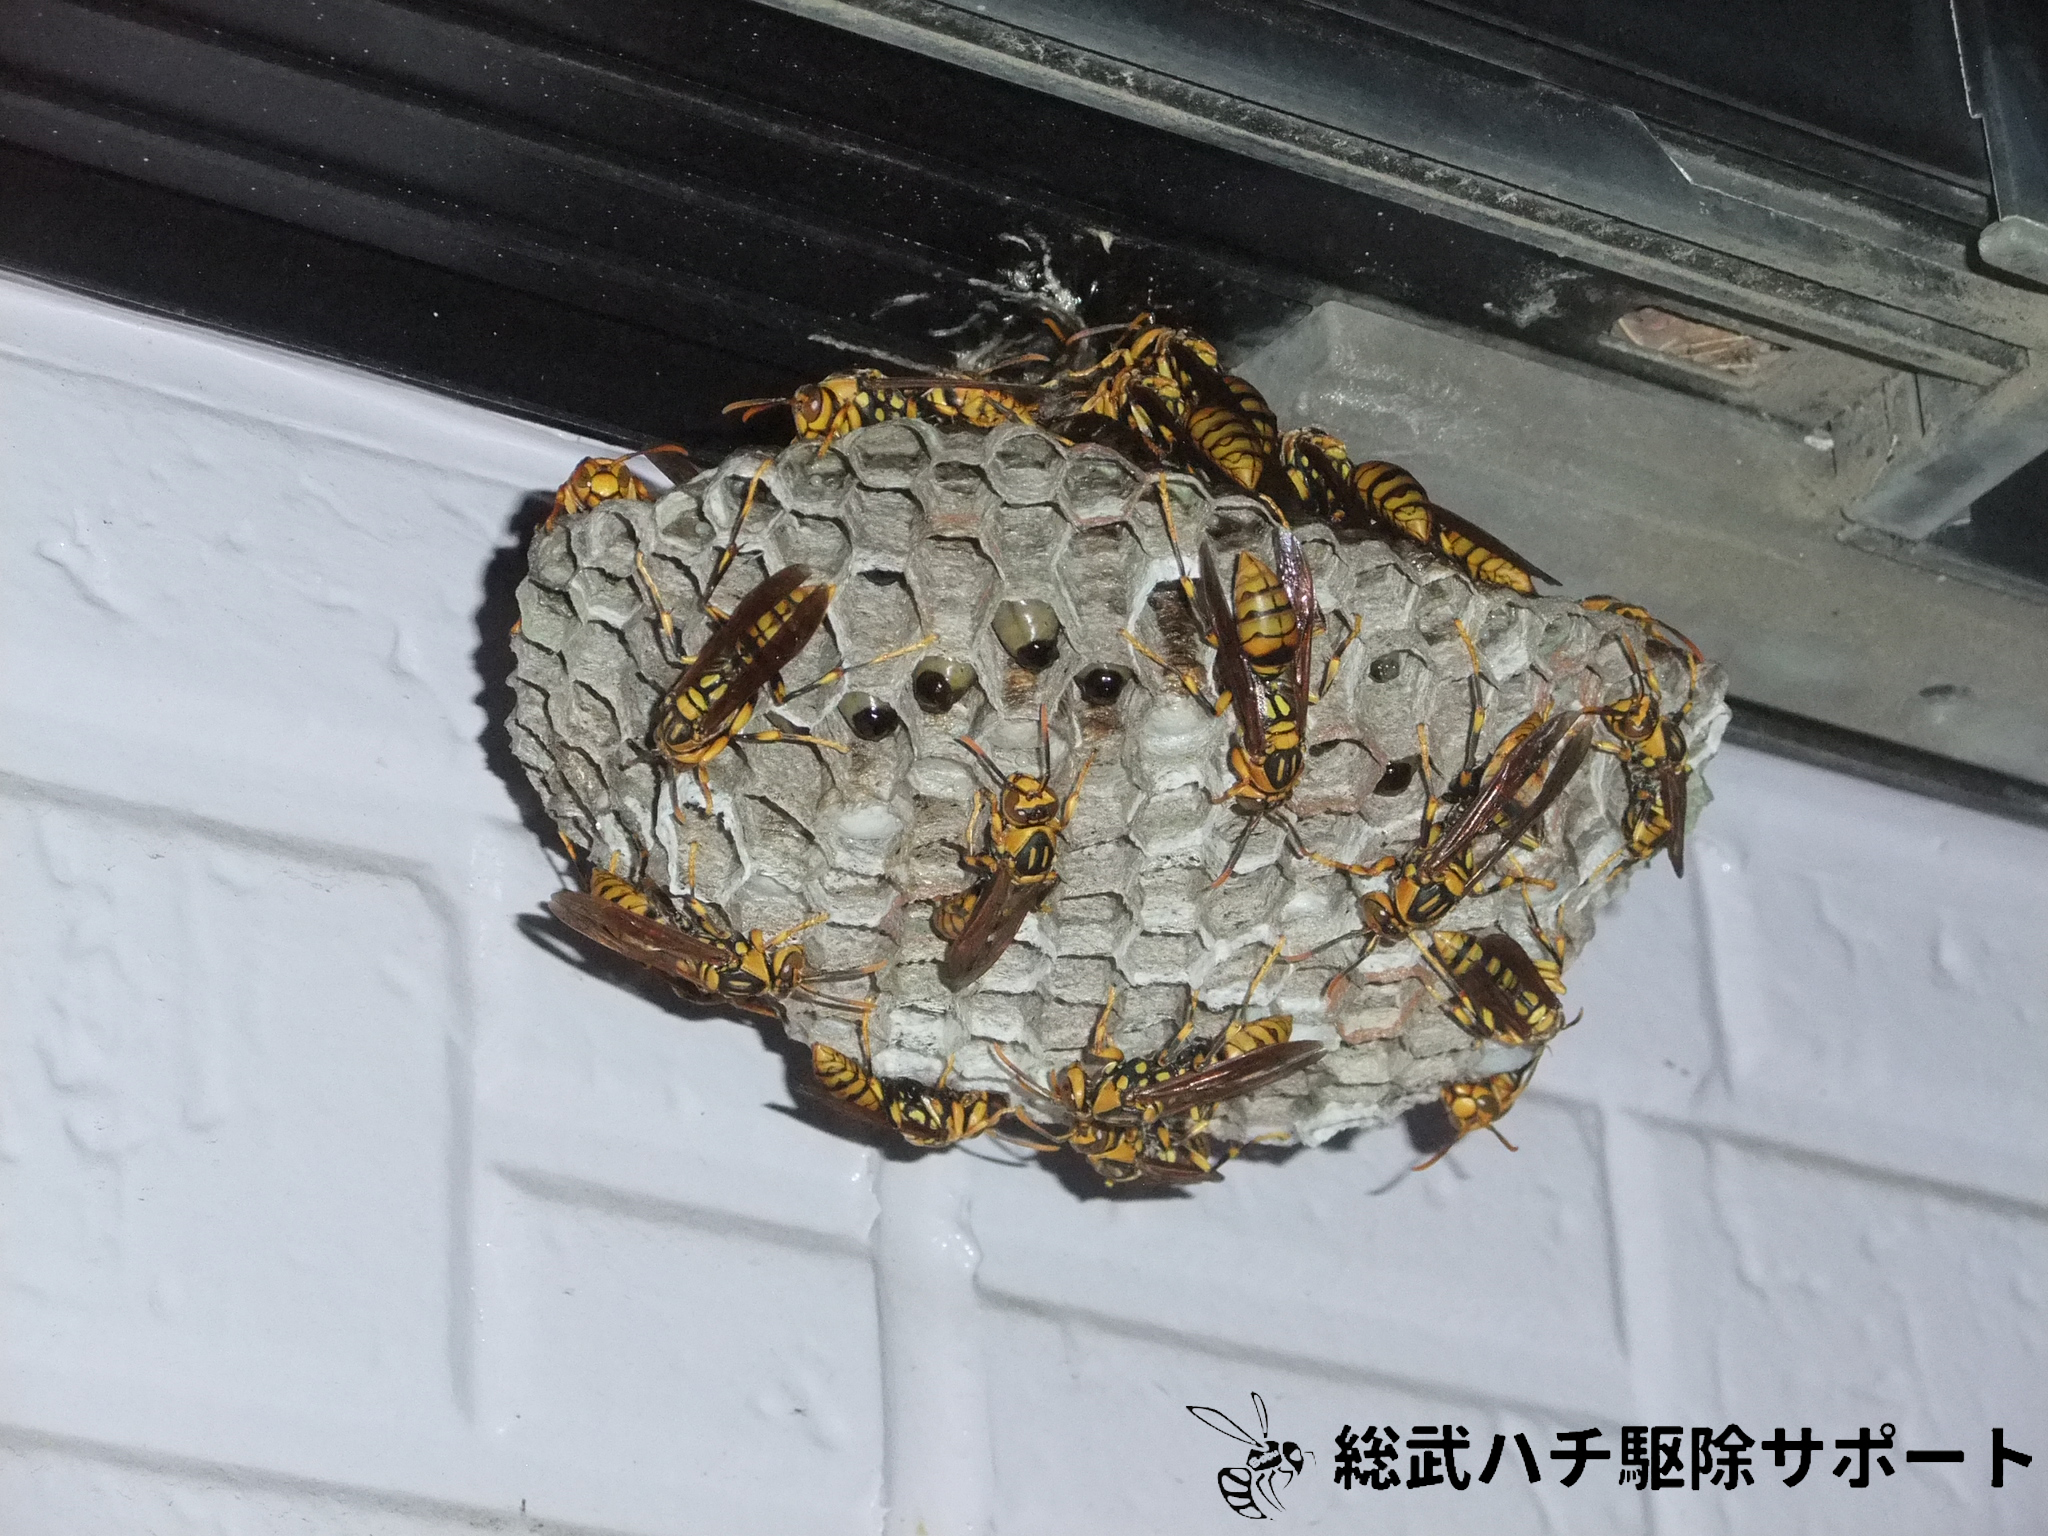 蘇我で窓の下にできたアシナガバチの巣を駆除